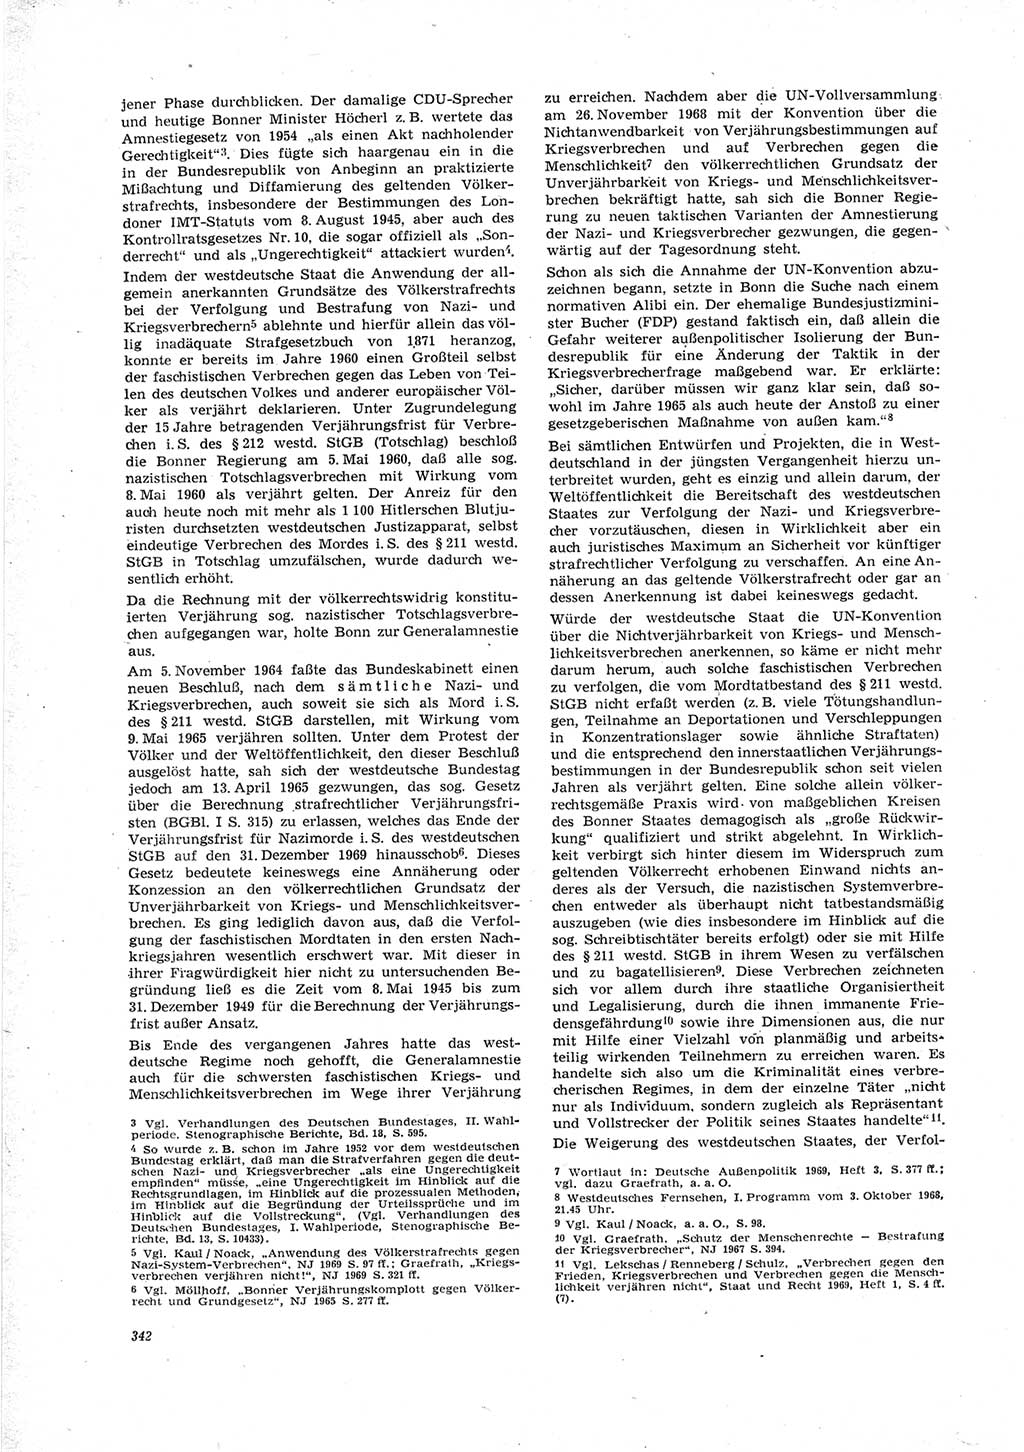 Neue Justiz (NJ), Zeitschrift für Recht und Rechtswissenschaft [Deutsche Demokratische Republik (DDR)], 23. Jahrgang 1969, Seite 342 (NJ DDR 1969, S. 342)